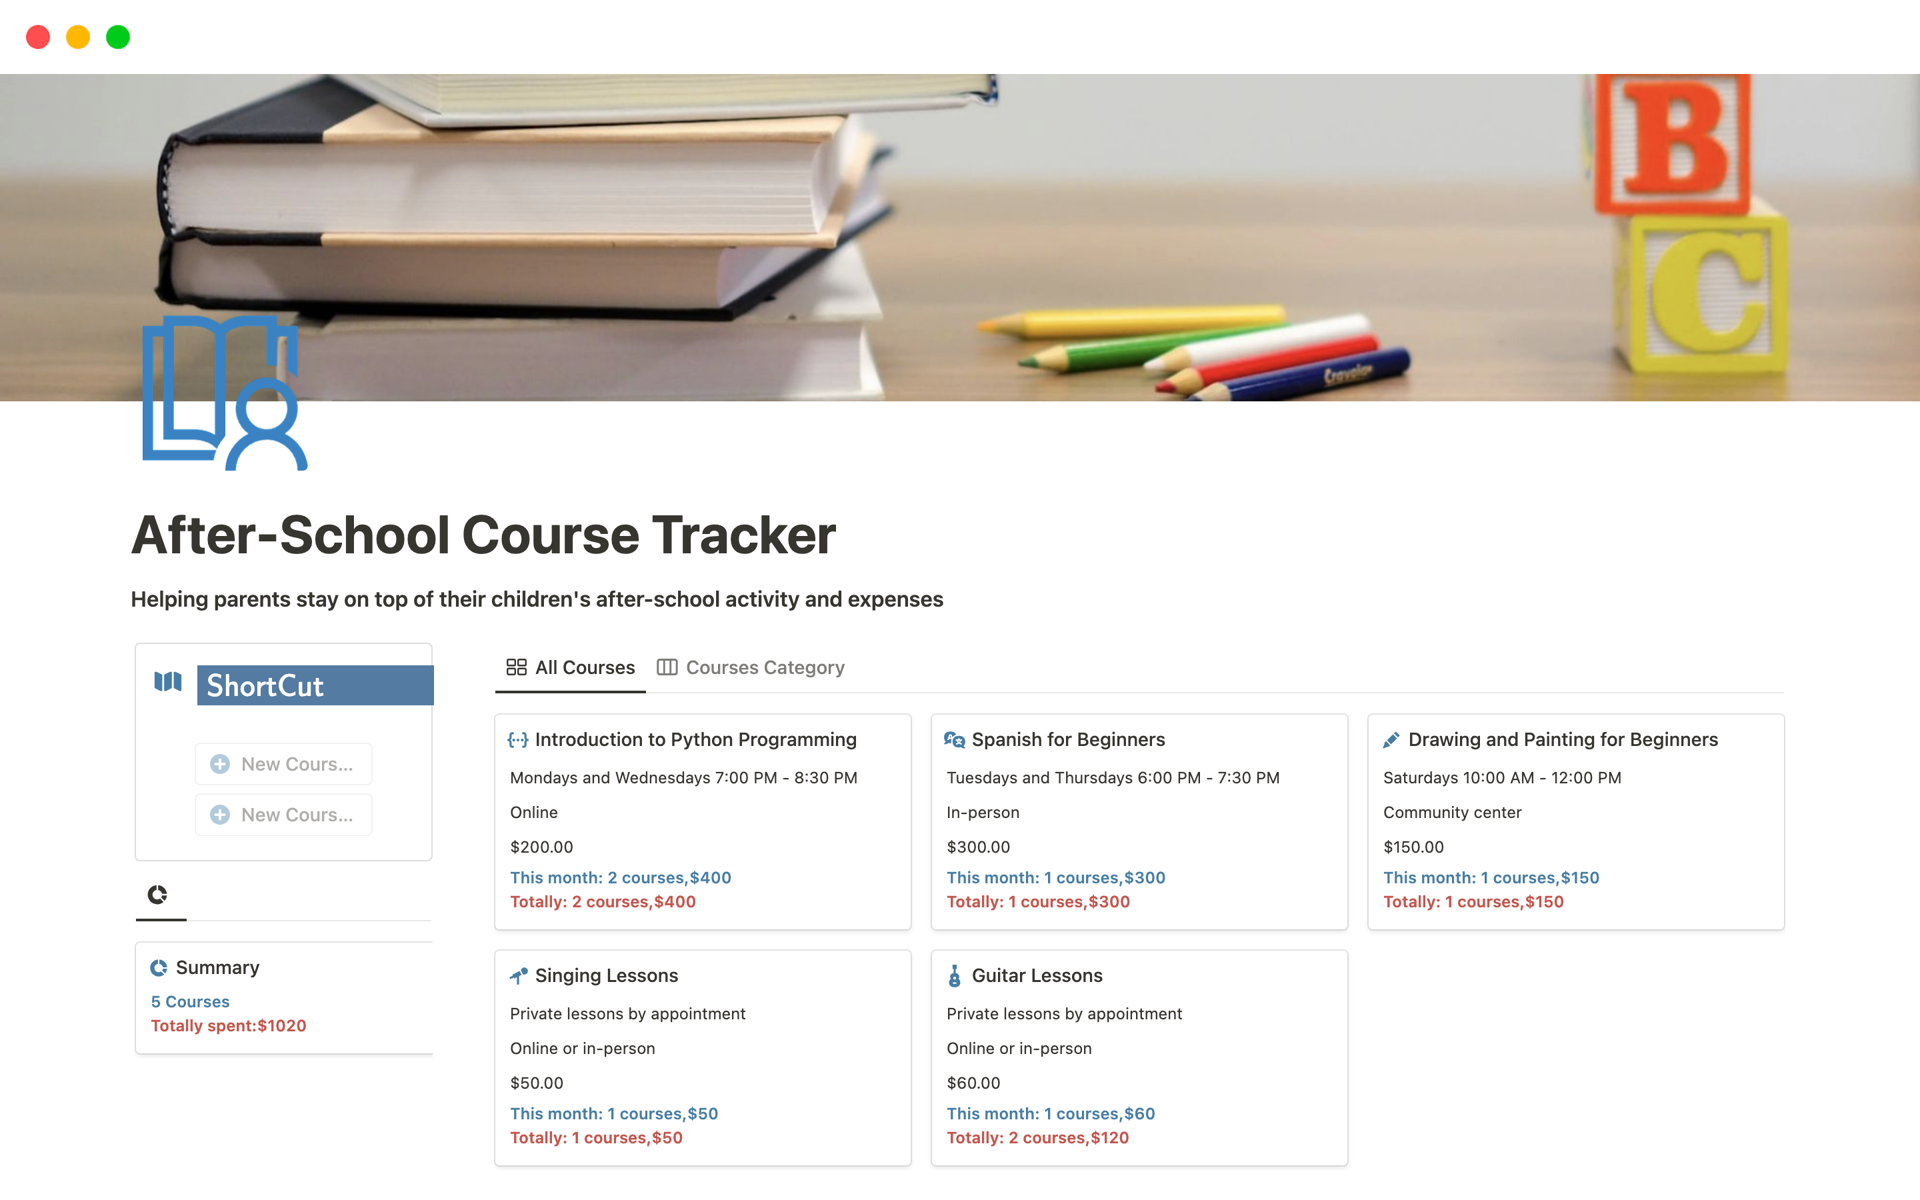 Vista previa de plantilla para After-School Course Tracker